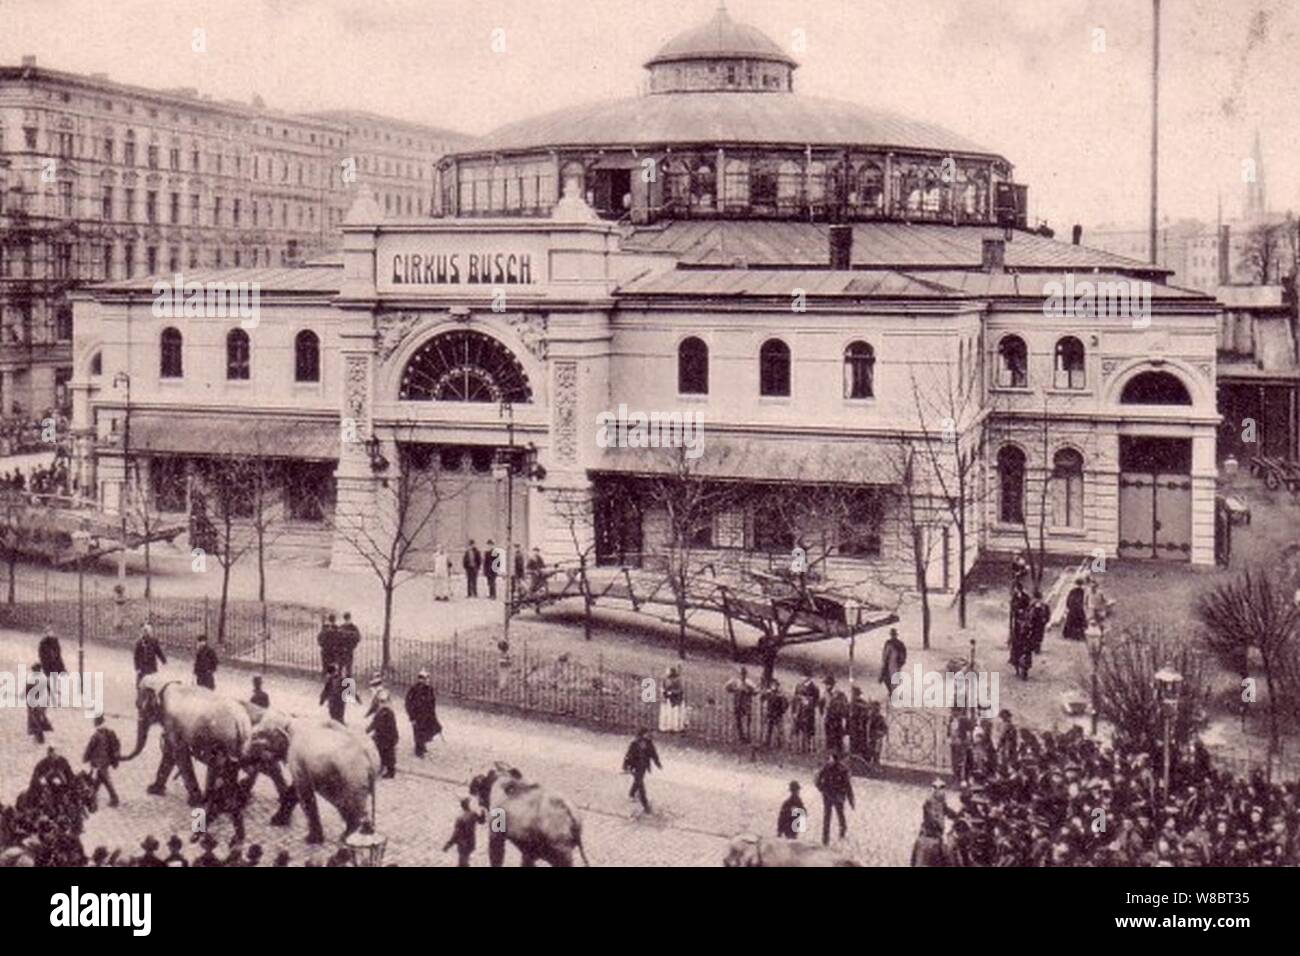 Der Zirkus-Busch-Bau Breslau 1903. Stock Photo